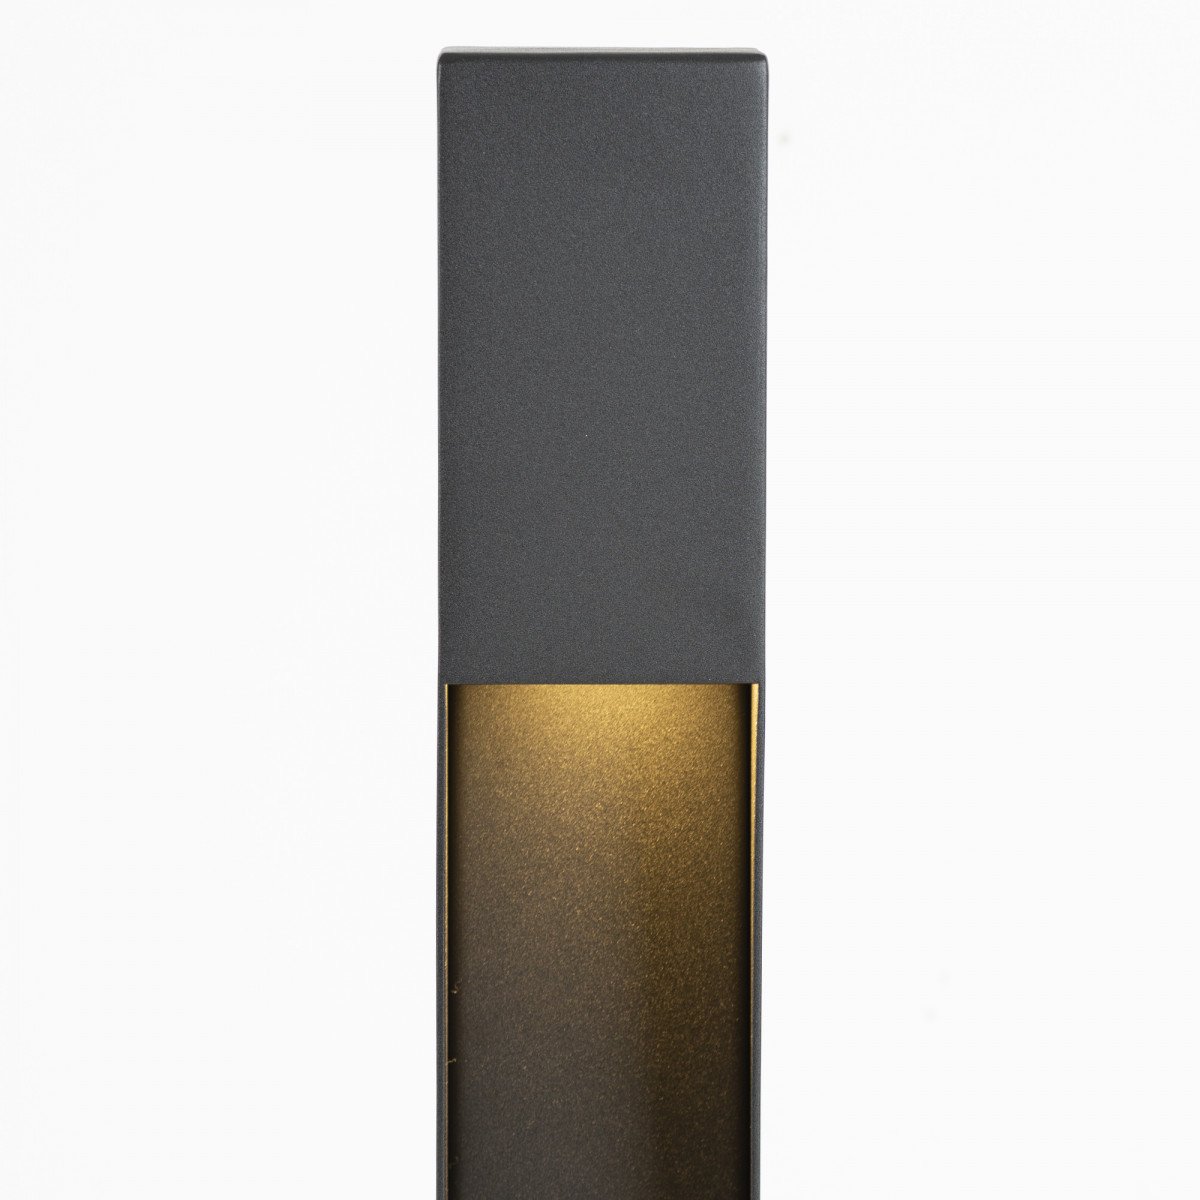 Buitenlamp Levi terras modern vormgegeven buitenverlichting in zwarte kleur